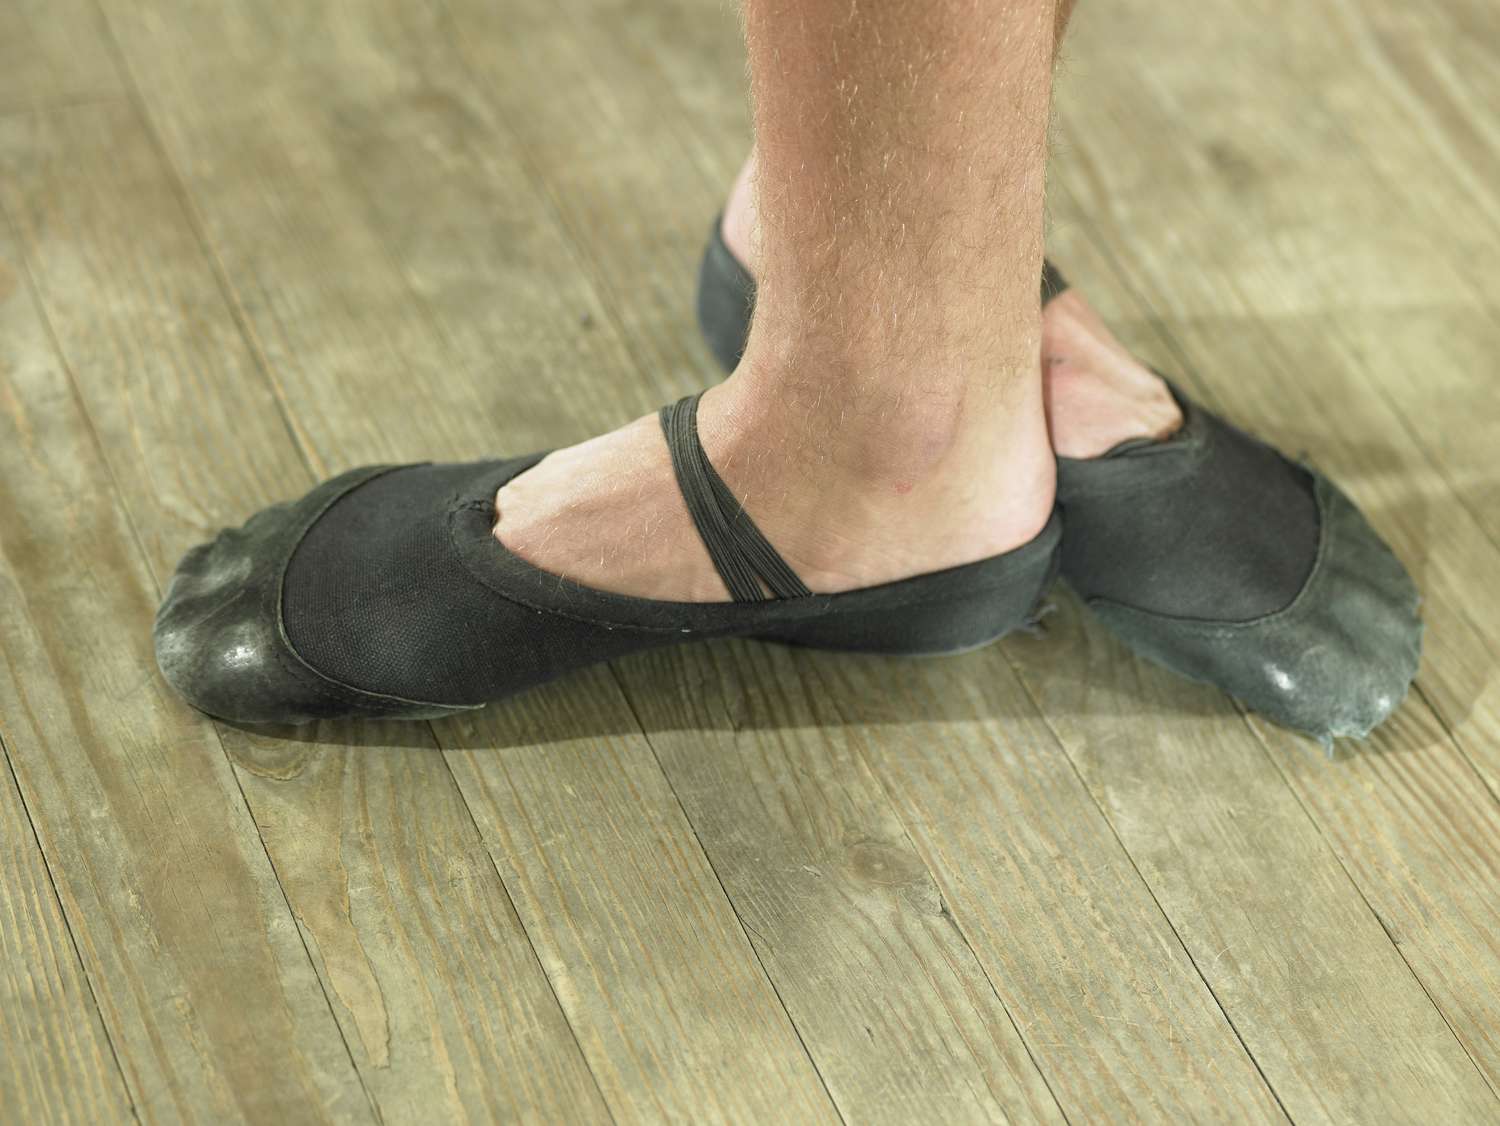 Balletdanser's voeten in dansstudio, close-up